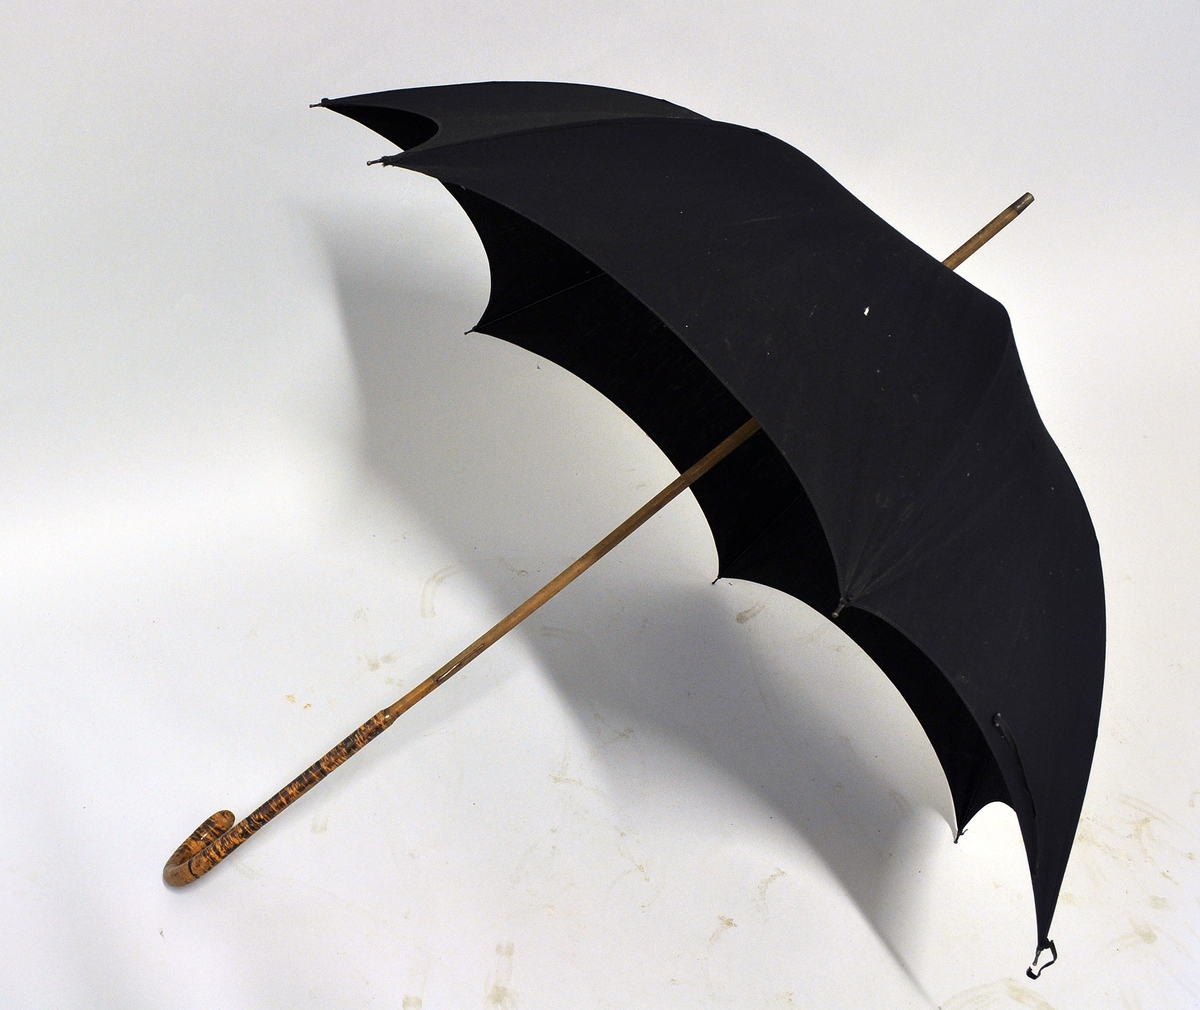 Sort stoffparaply med bøyd håndtak av tre.